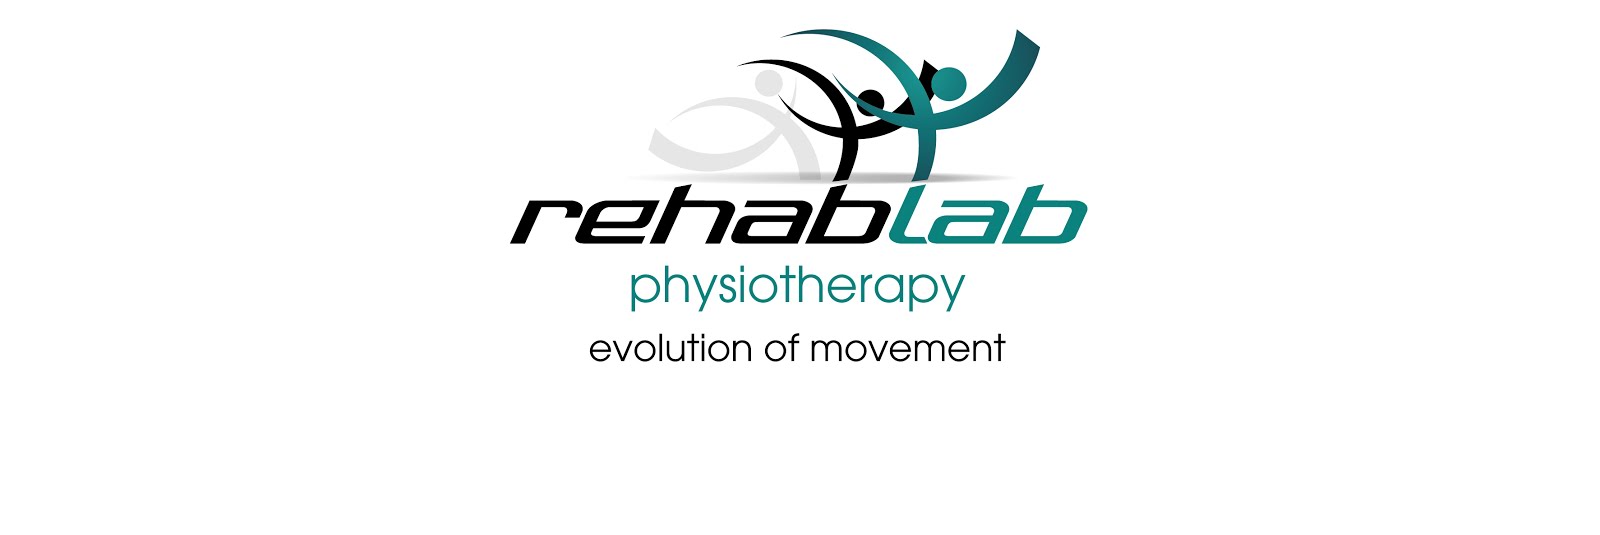 Rehab Lab Physio